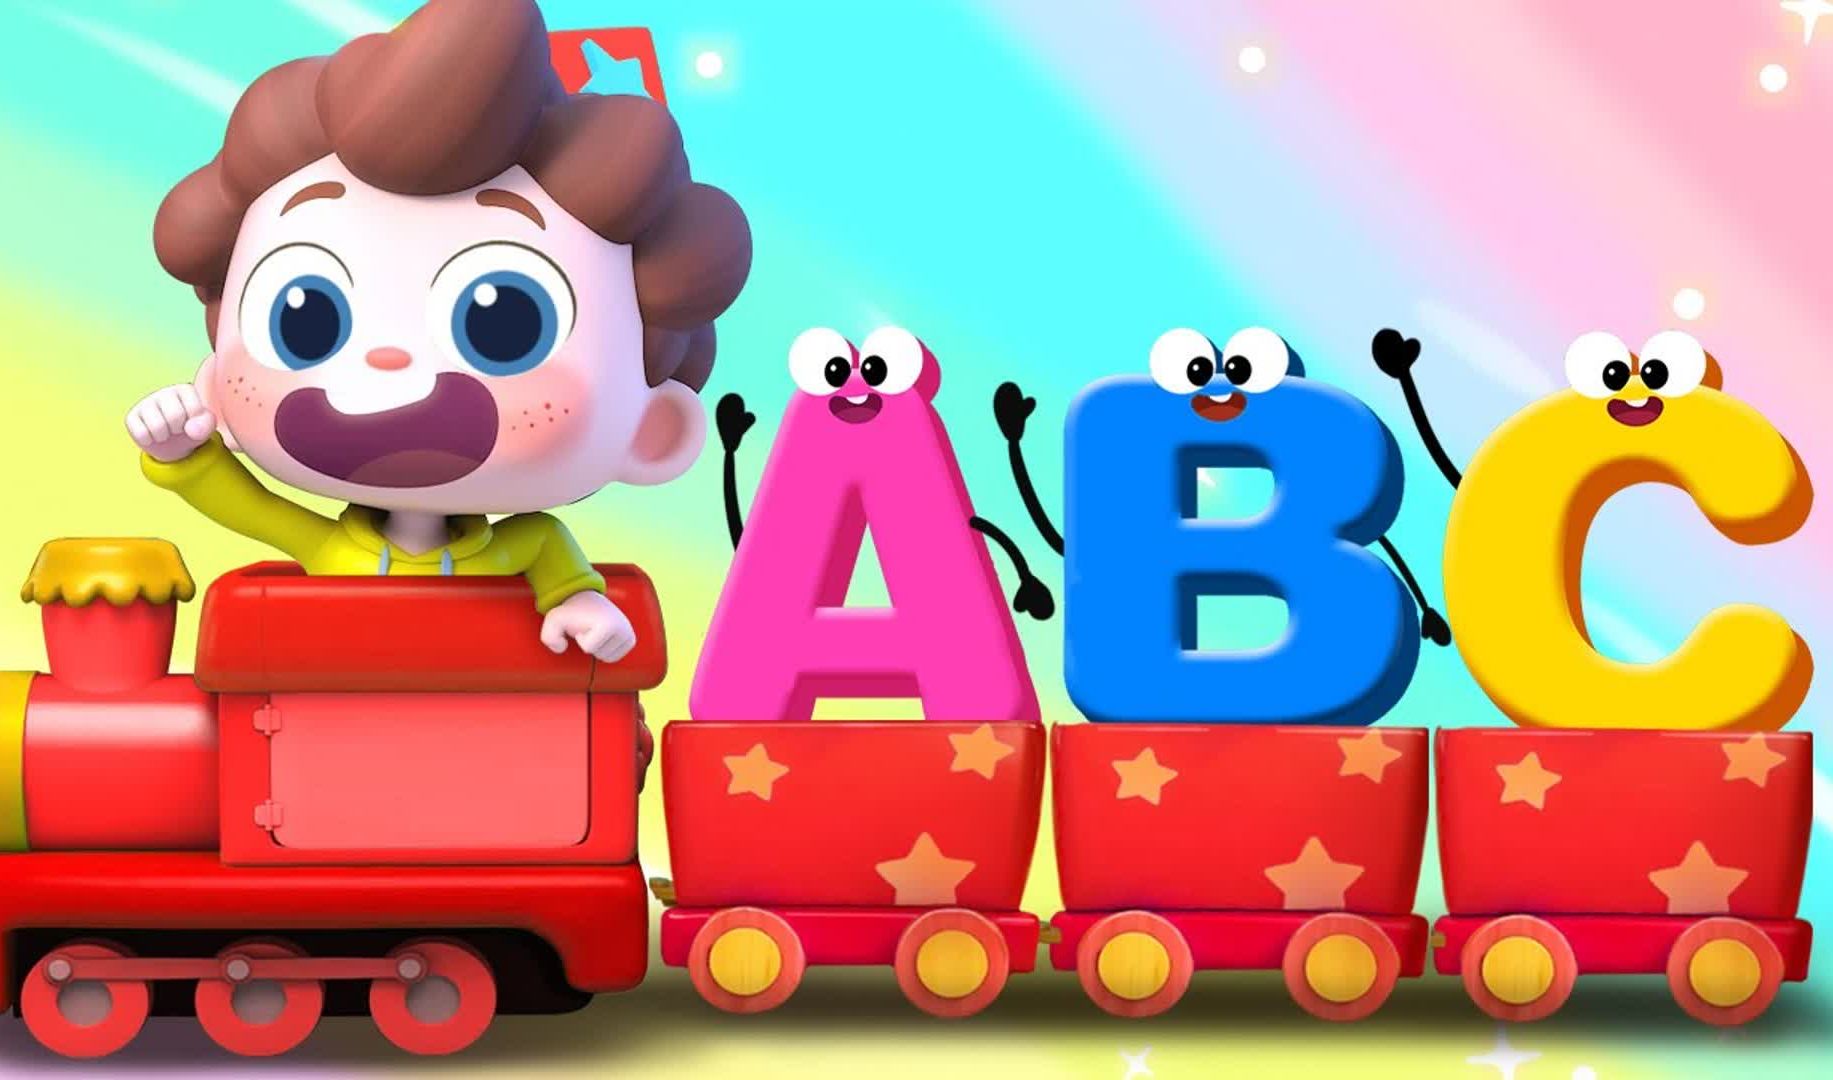 【BabyBus】ABC歌_学字母表ABC Song _ Learn the Alphabets